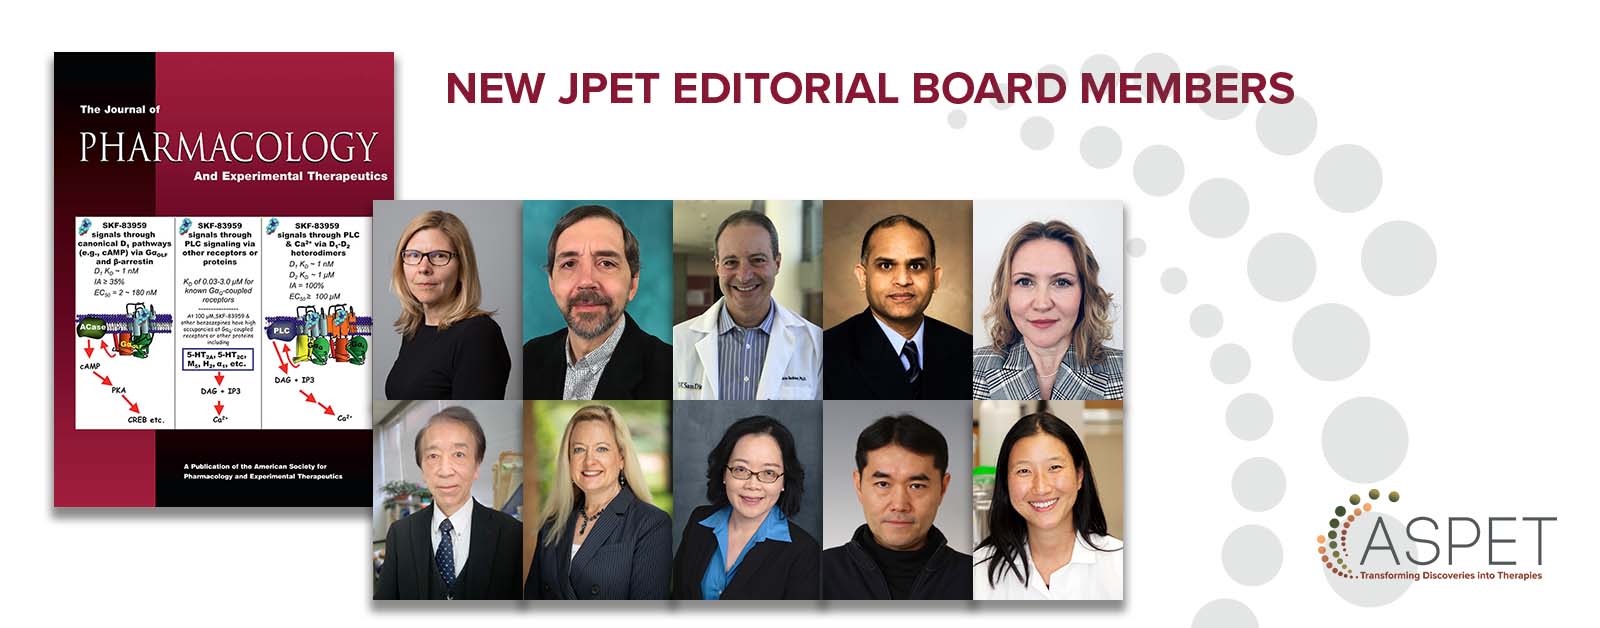 JPET New Editorial Board